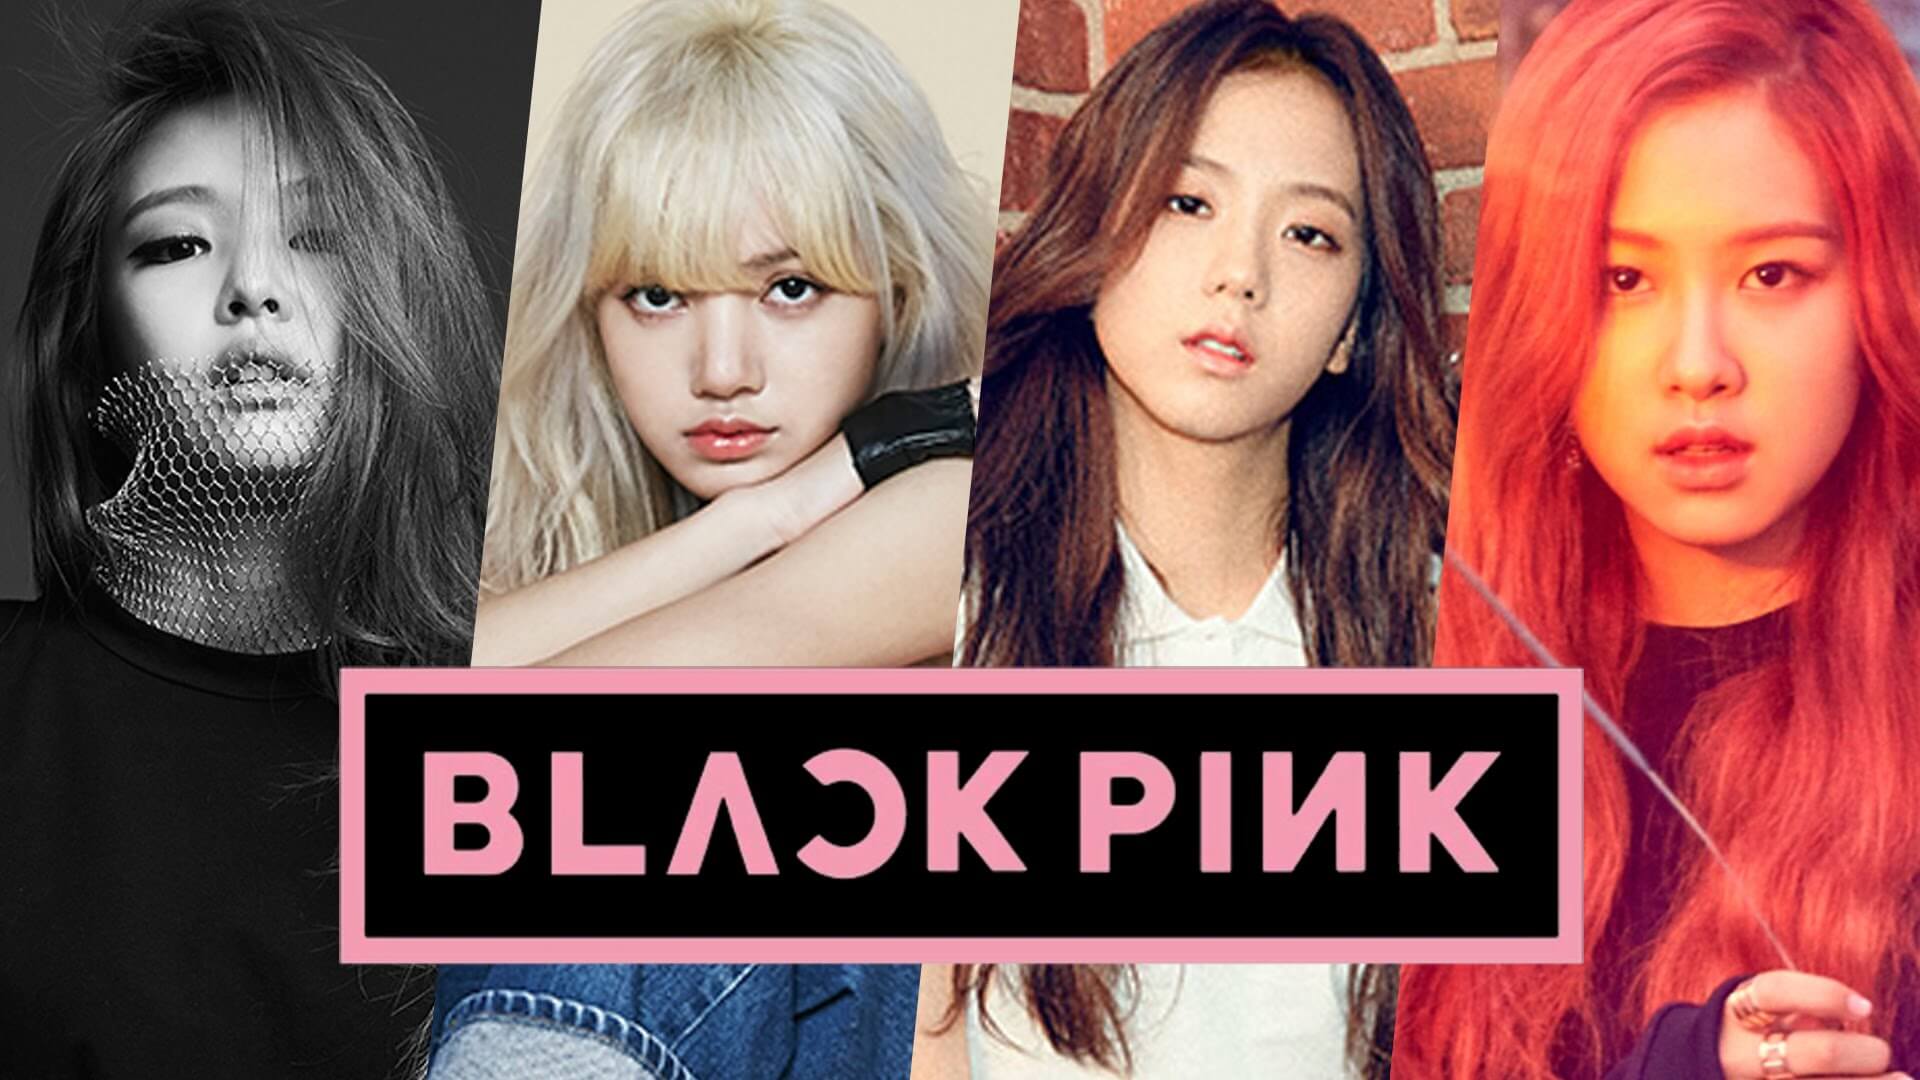 Black Pink Nhật Bản sẽ đưa bạn đến với những chi tiết đơn giản nhưng đầy ấn tượng của hoạt động của BlackPink tại Nhật Bản. Hãy cùng tìm hiểu về những tác động của họ trong cộng đồng âm nhạc tại đất nước này.